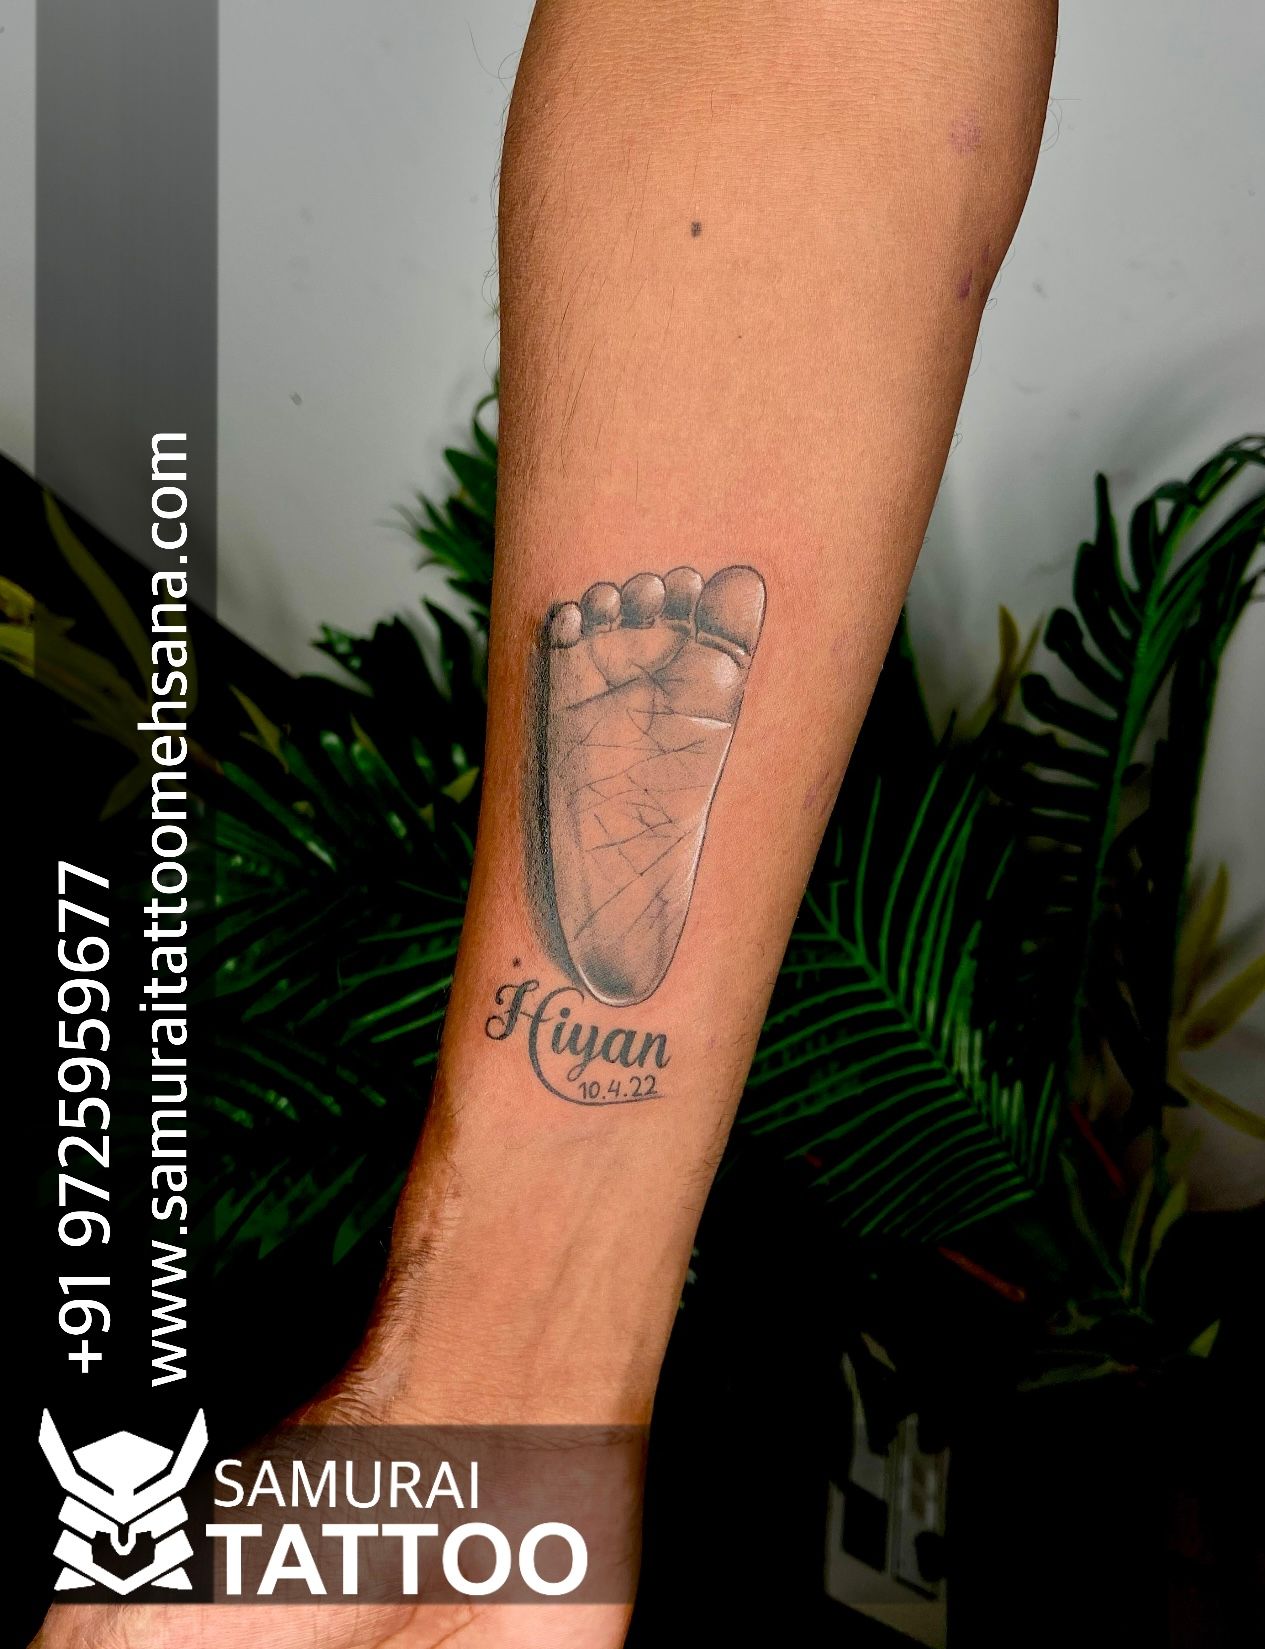 15 Best Footprint Tattoo Designs for Men and Women